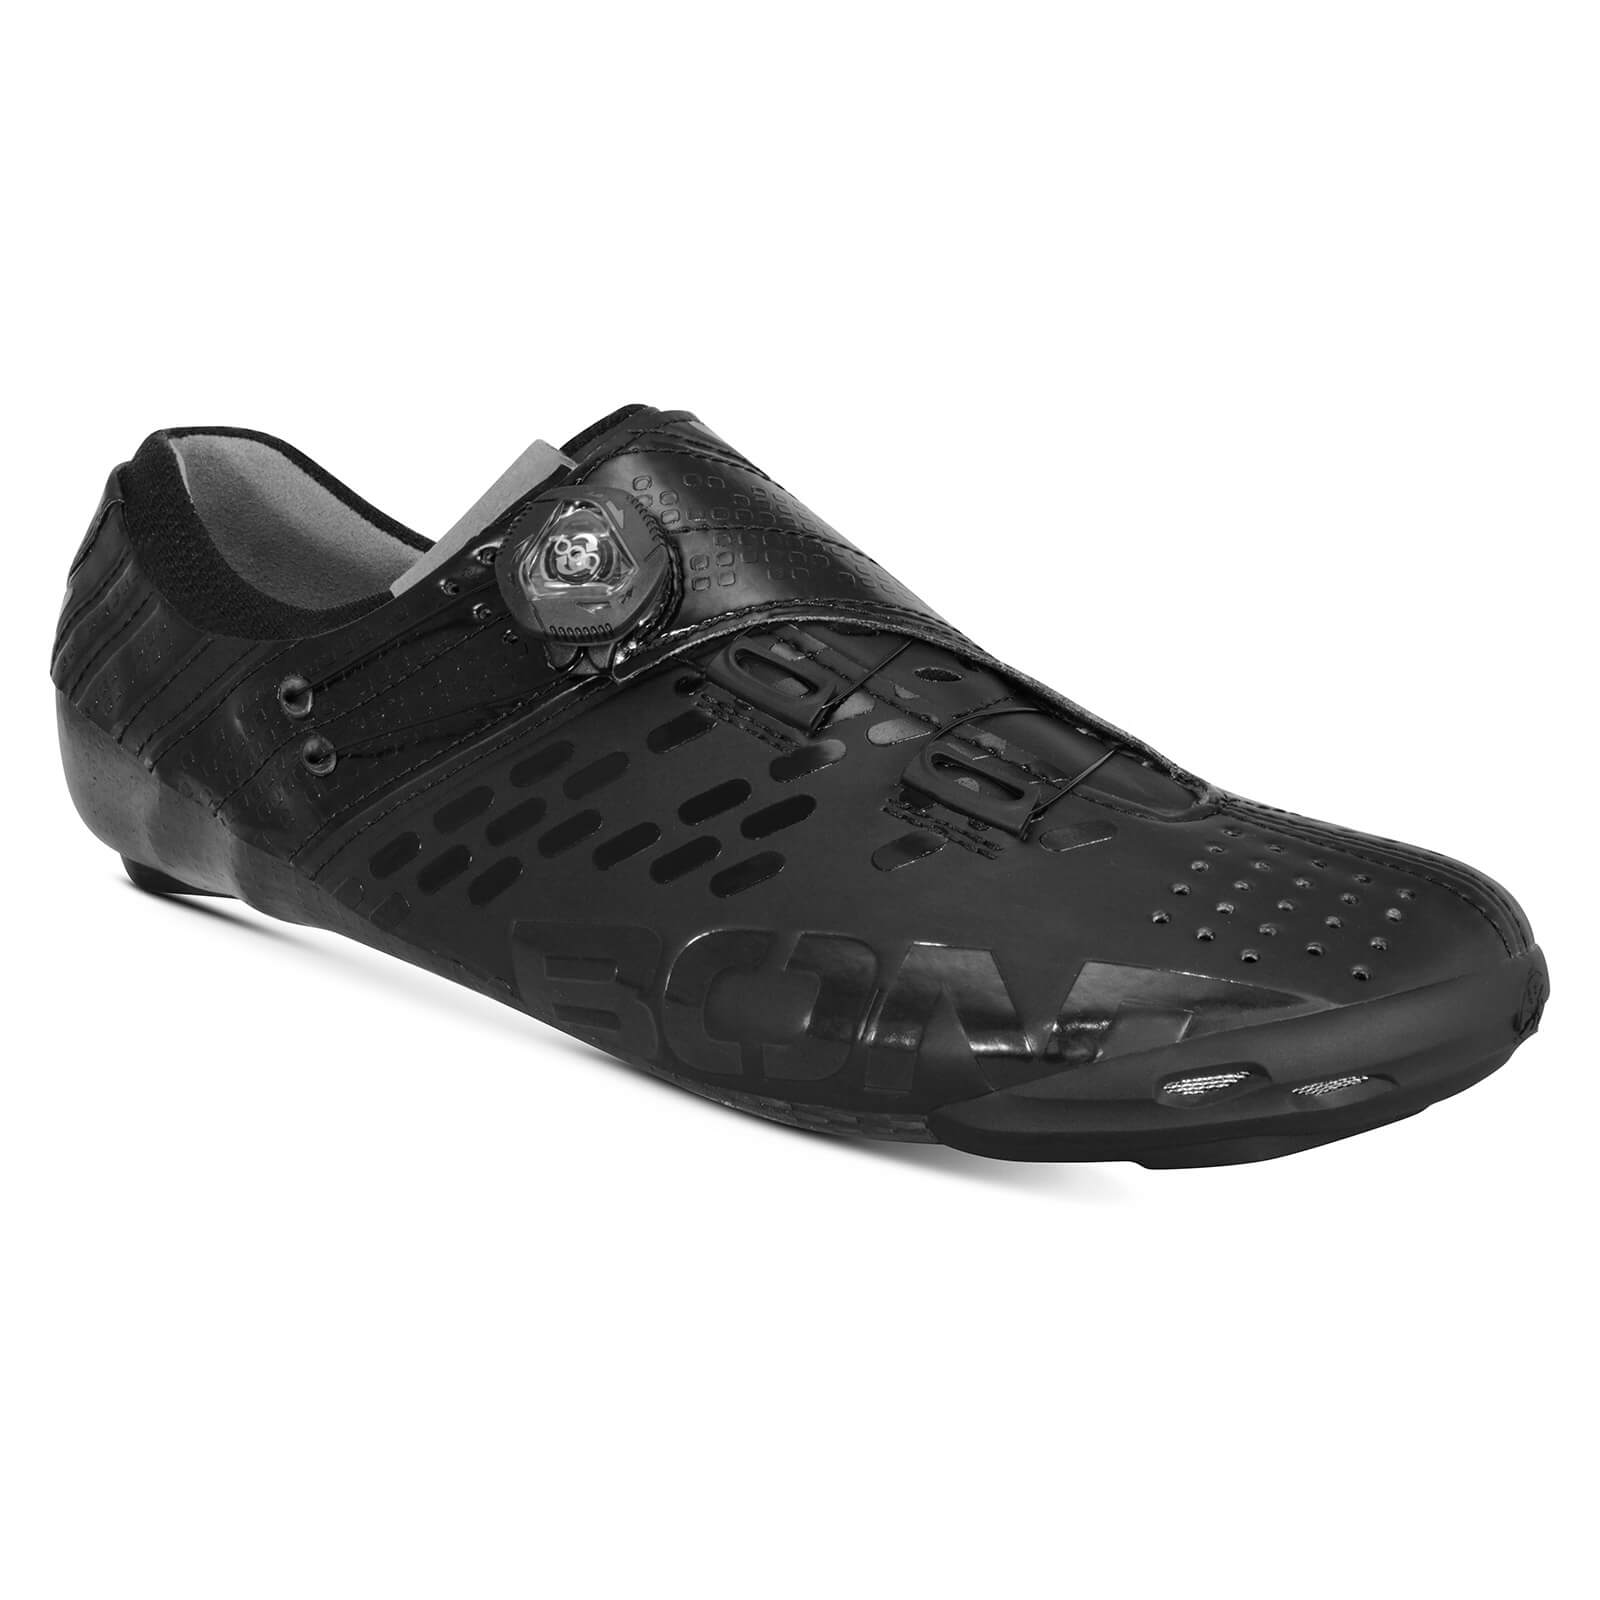 Bont Helix Road Shoes - EU 40 - Black